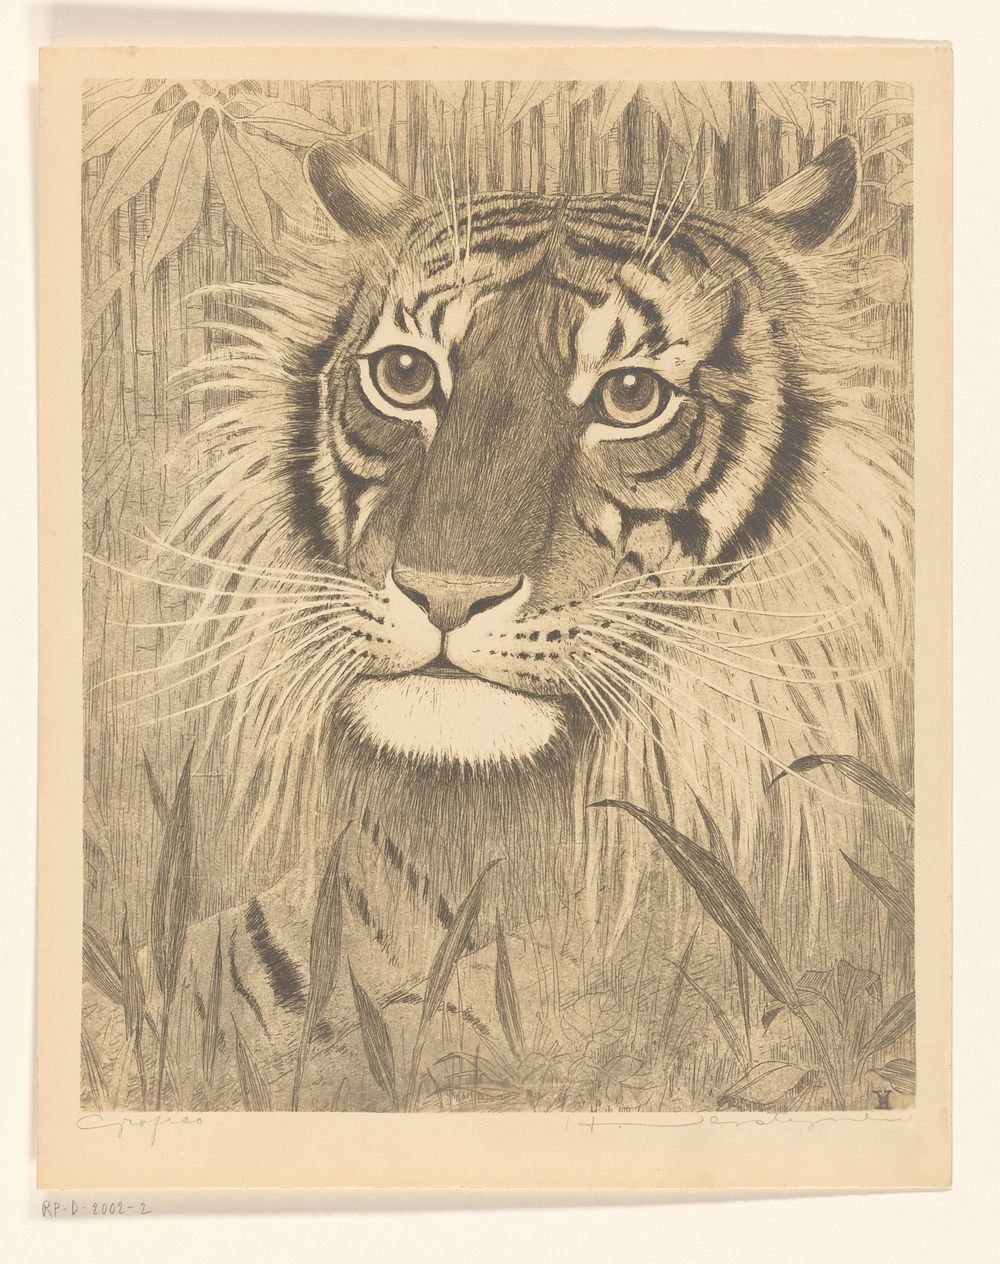 Kop van een tijger (after 1921) by Henri Verstijnen